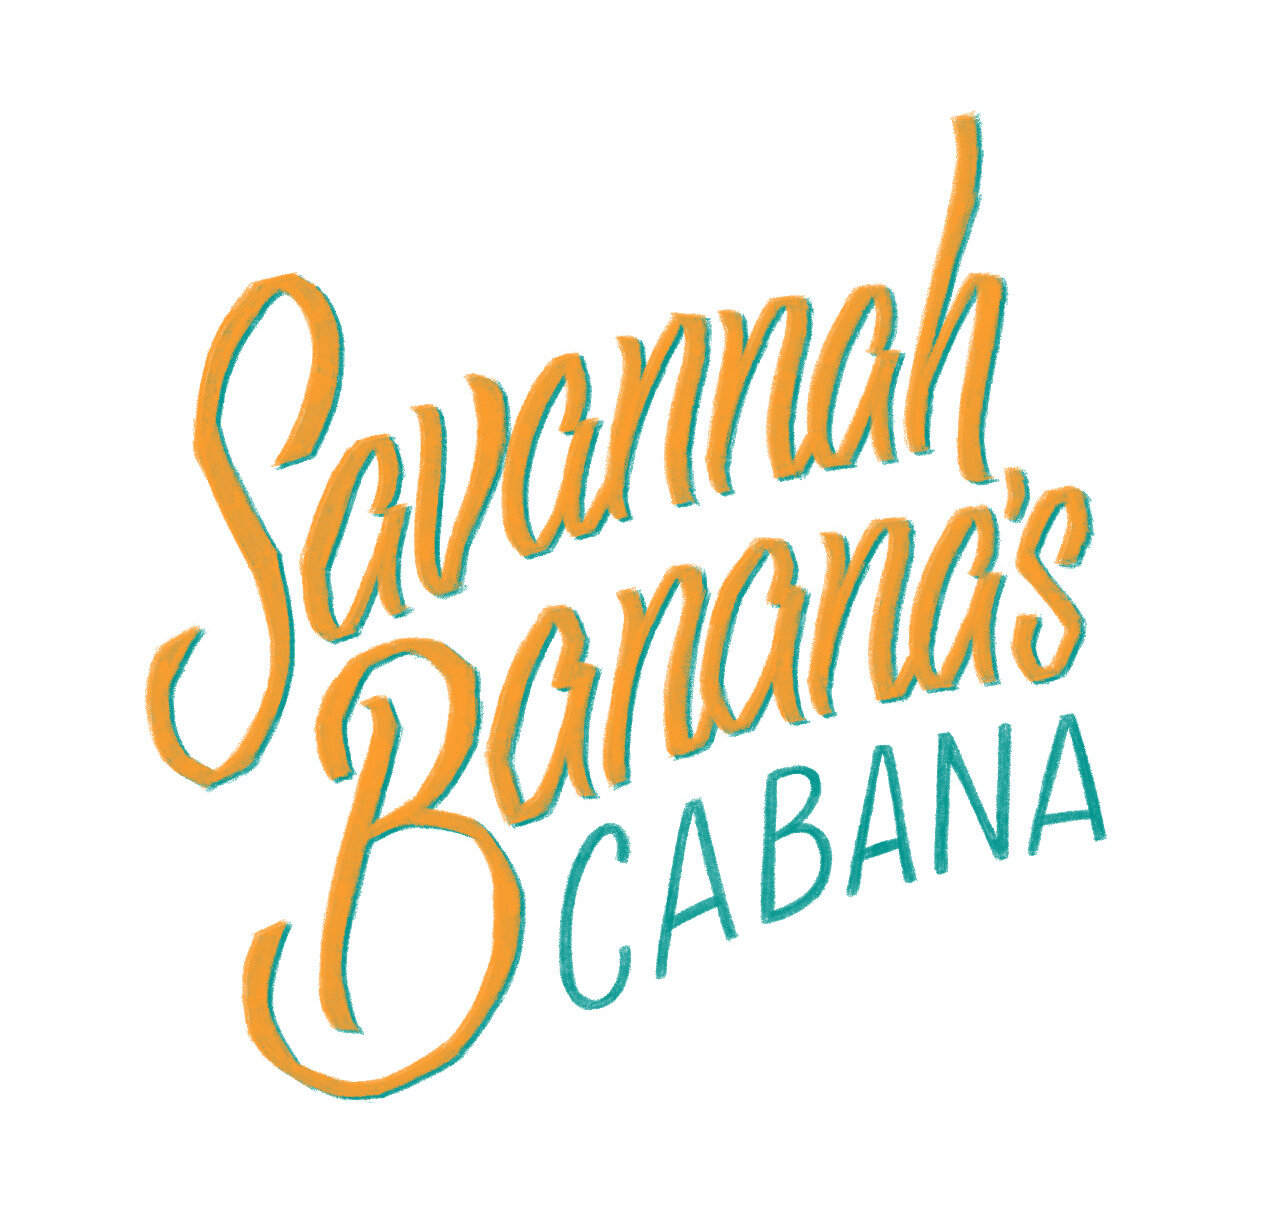 Savannah_Banana 3.jpg